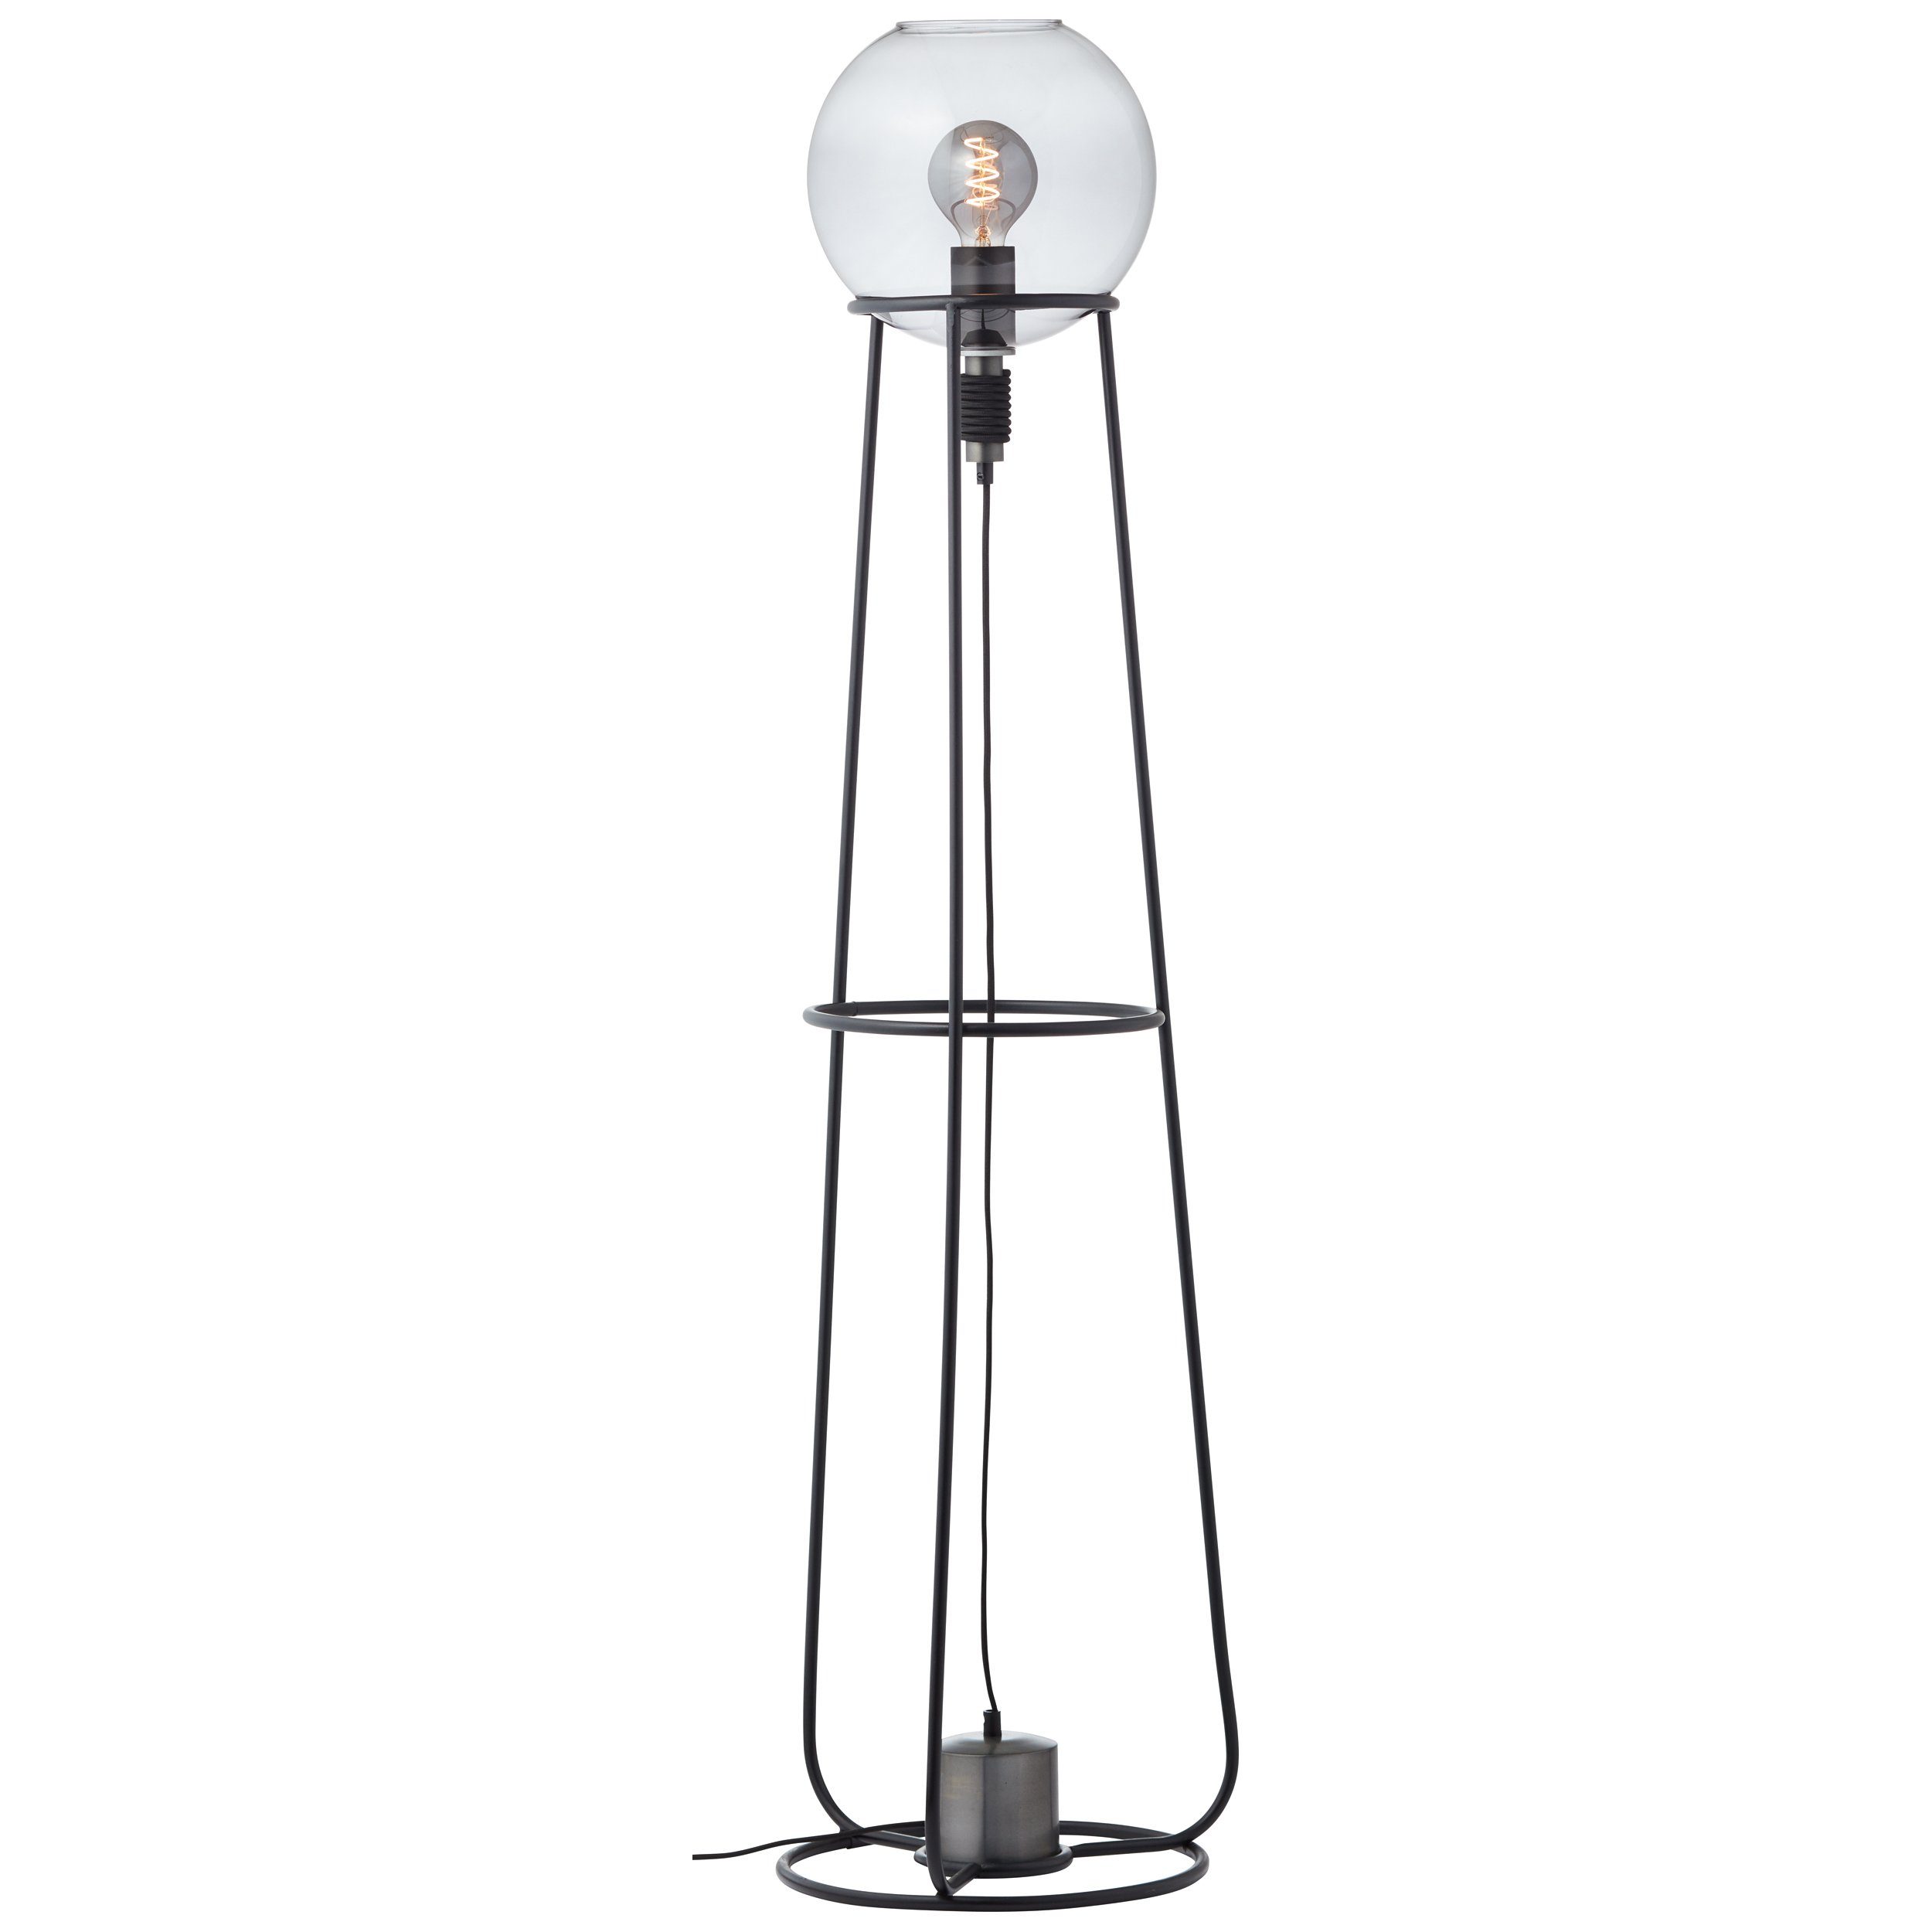 Brilliant Stehlampe Pheme, Pheme Standleuchte 1flg schwarz/silber, Metall/Glas, 1x A60, E27, 52 W | Standleuchten